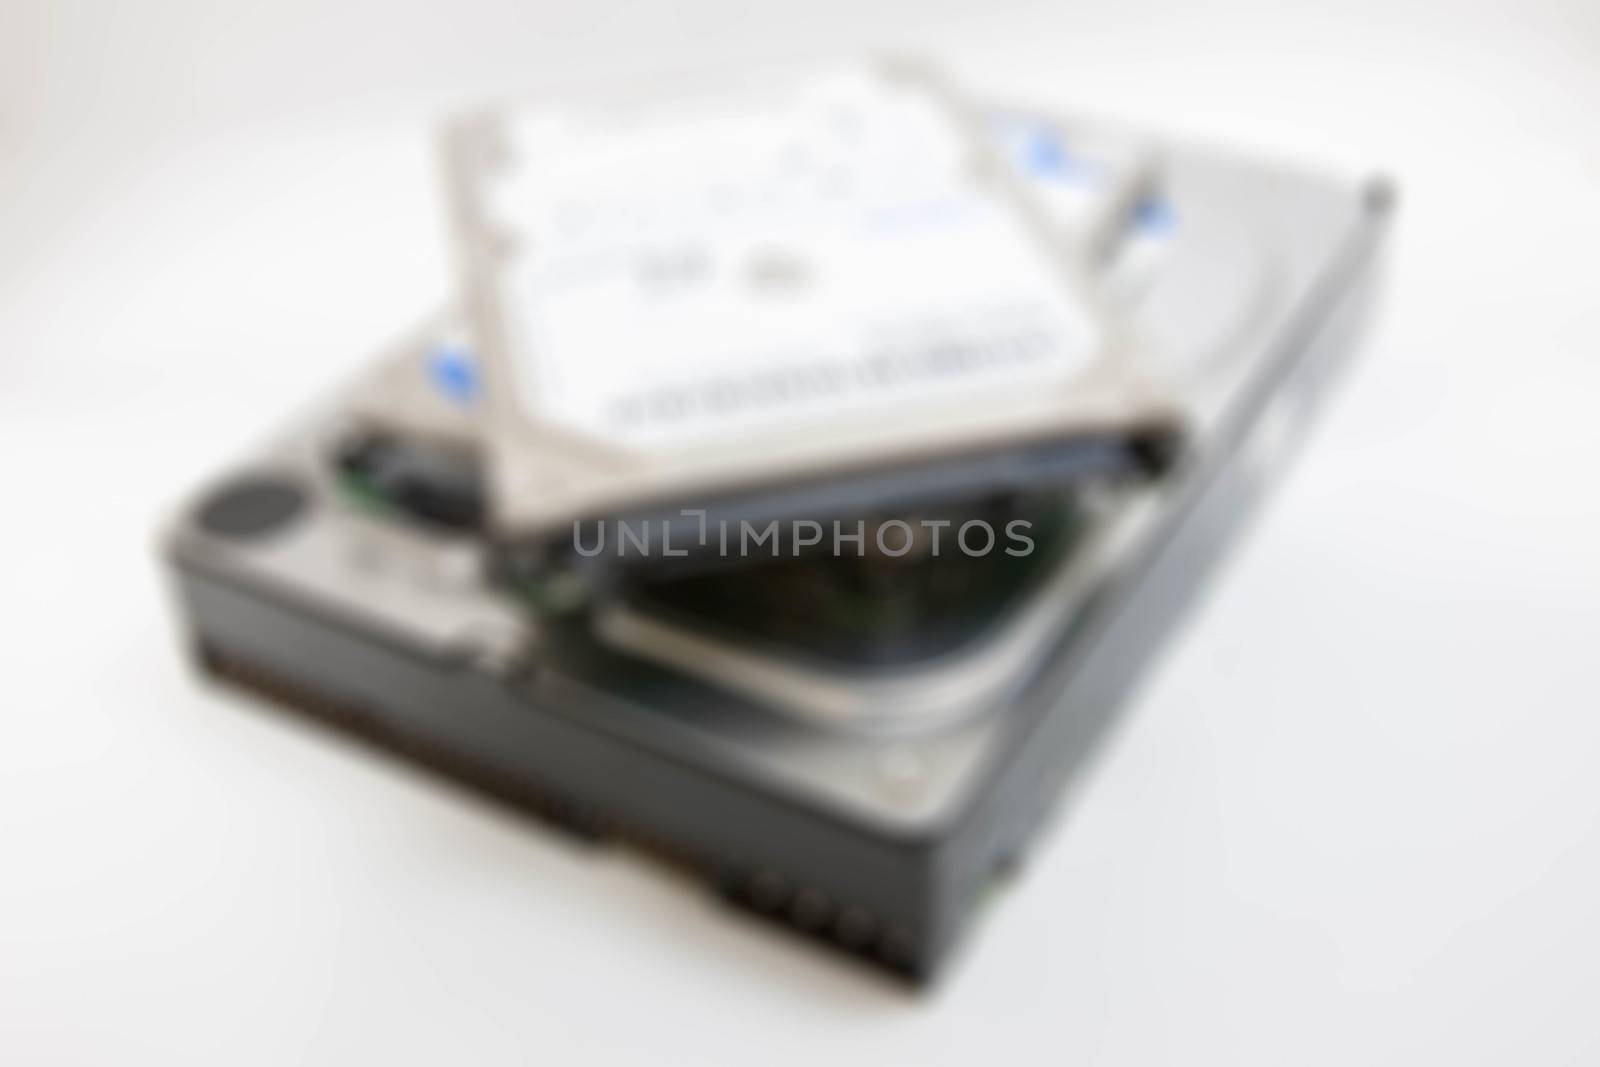 SATA and IDE harddisks blur by primzrider